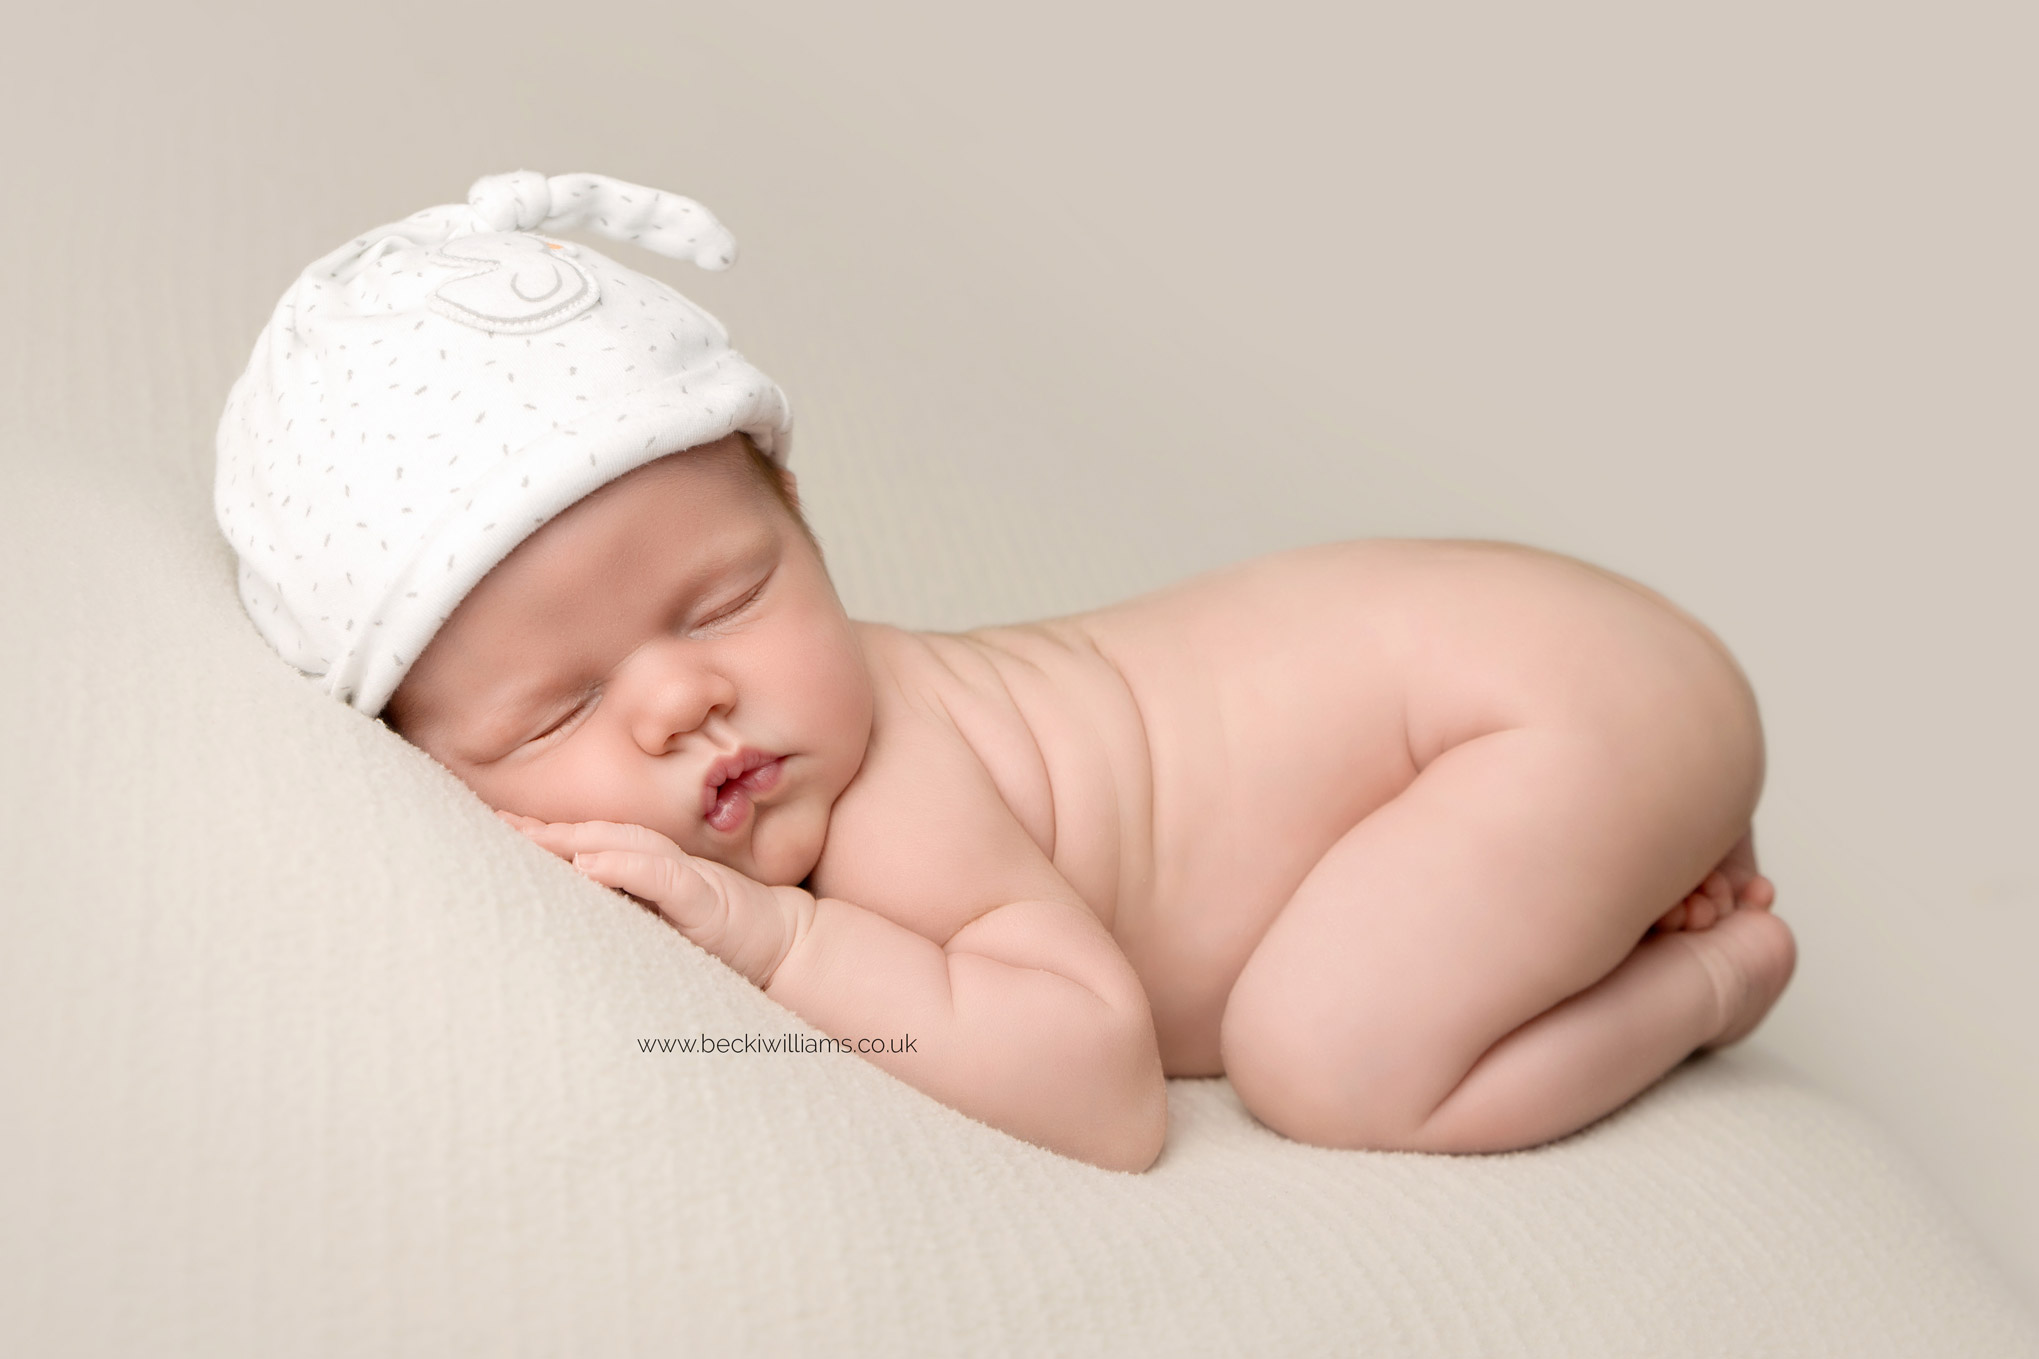 photographer-in-hemel-hempstead-newborn-baby-girl-asleep-21.jpg